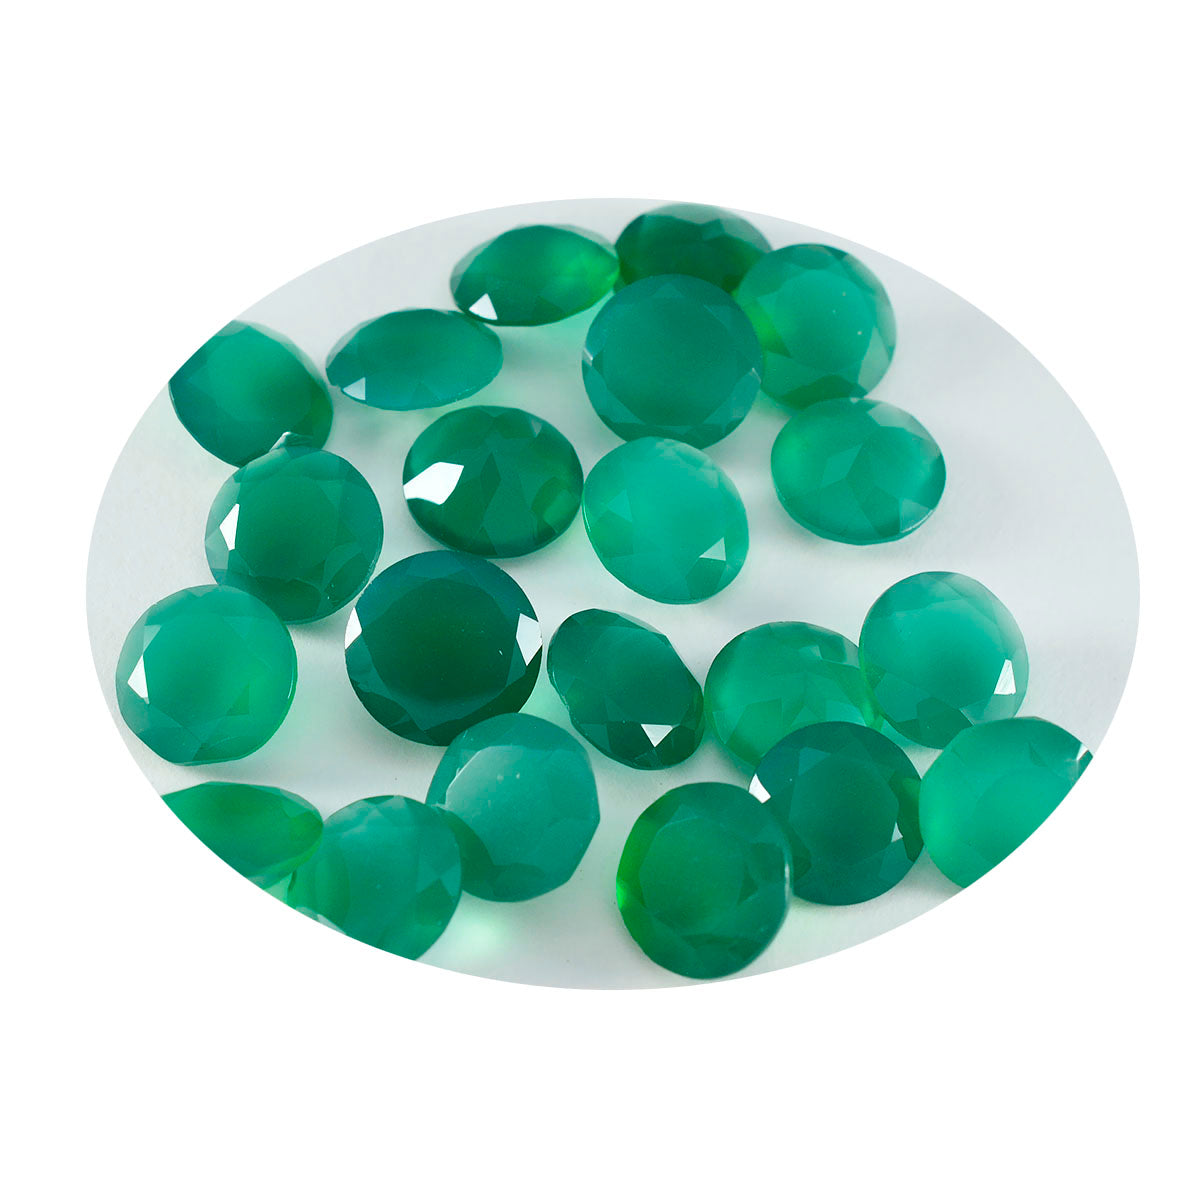 Riyogems 1 Stück natürlicher grüner Onyx, facettiert, 5 x 5 mm, runde Form, A1-Qualitäts-Edelstein